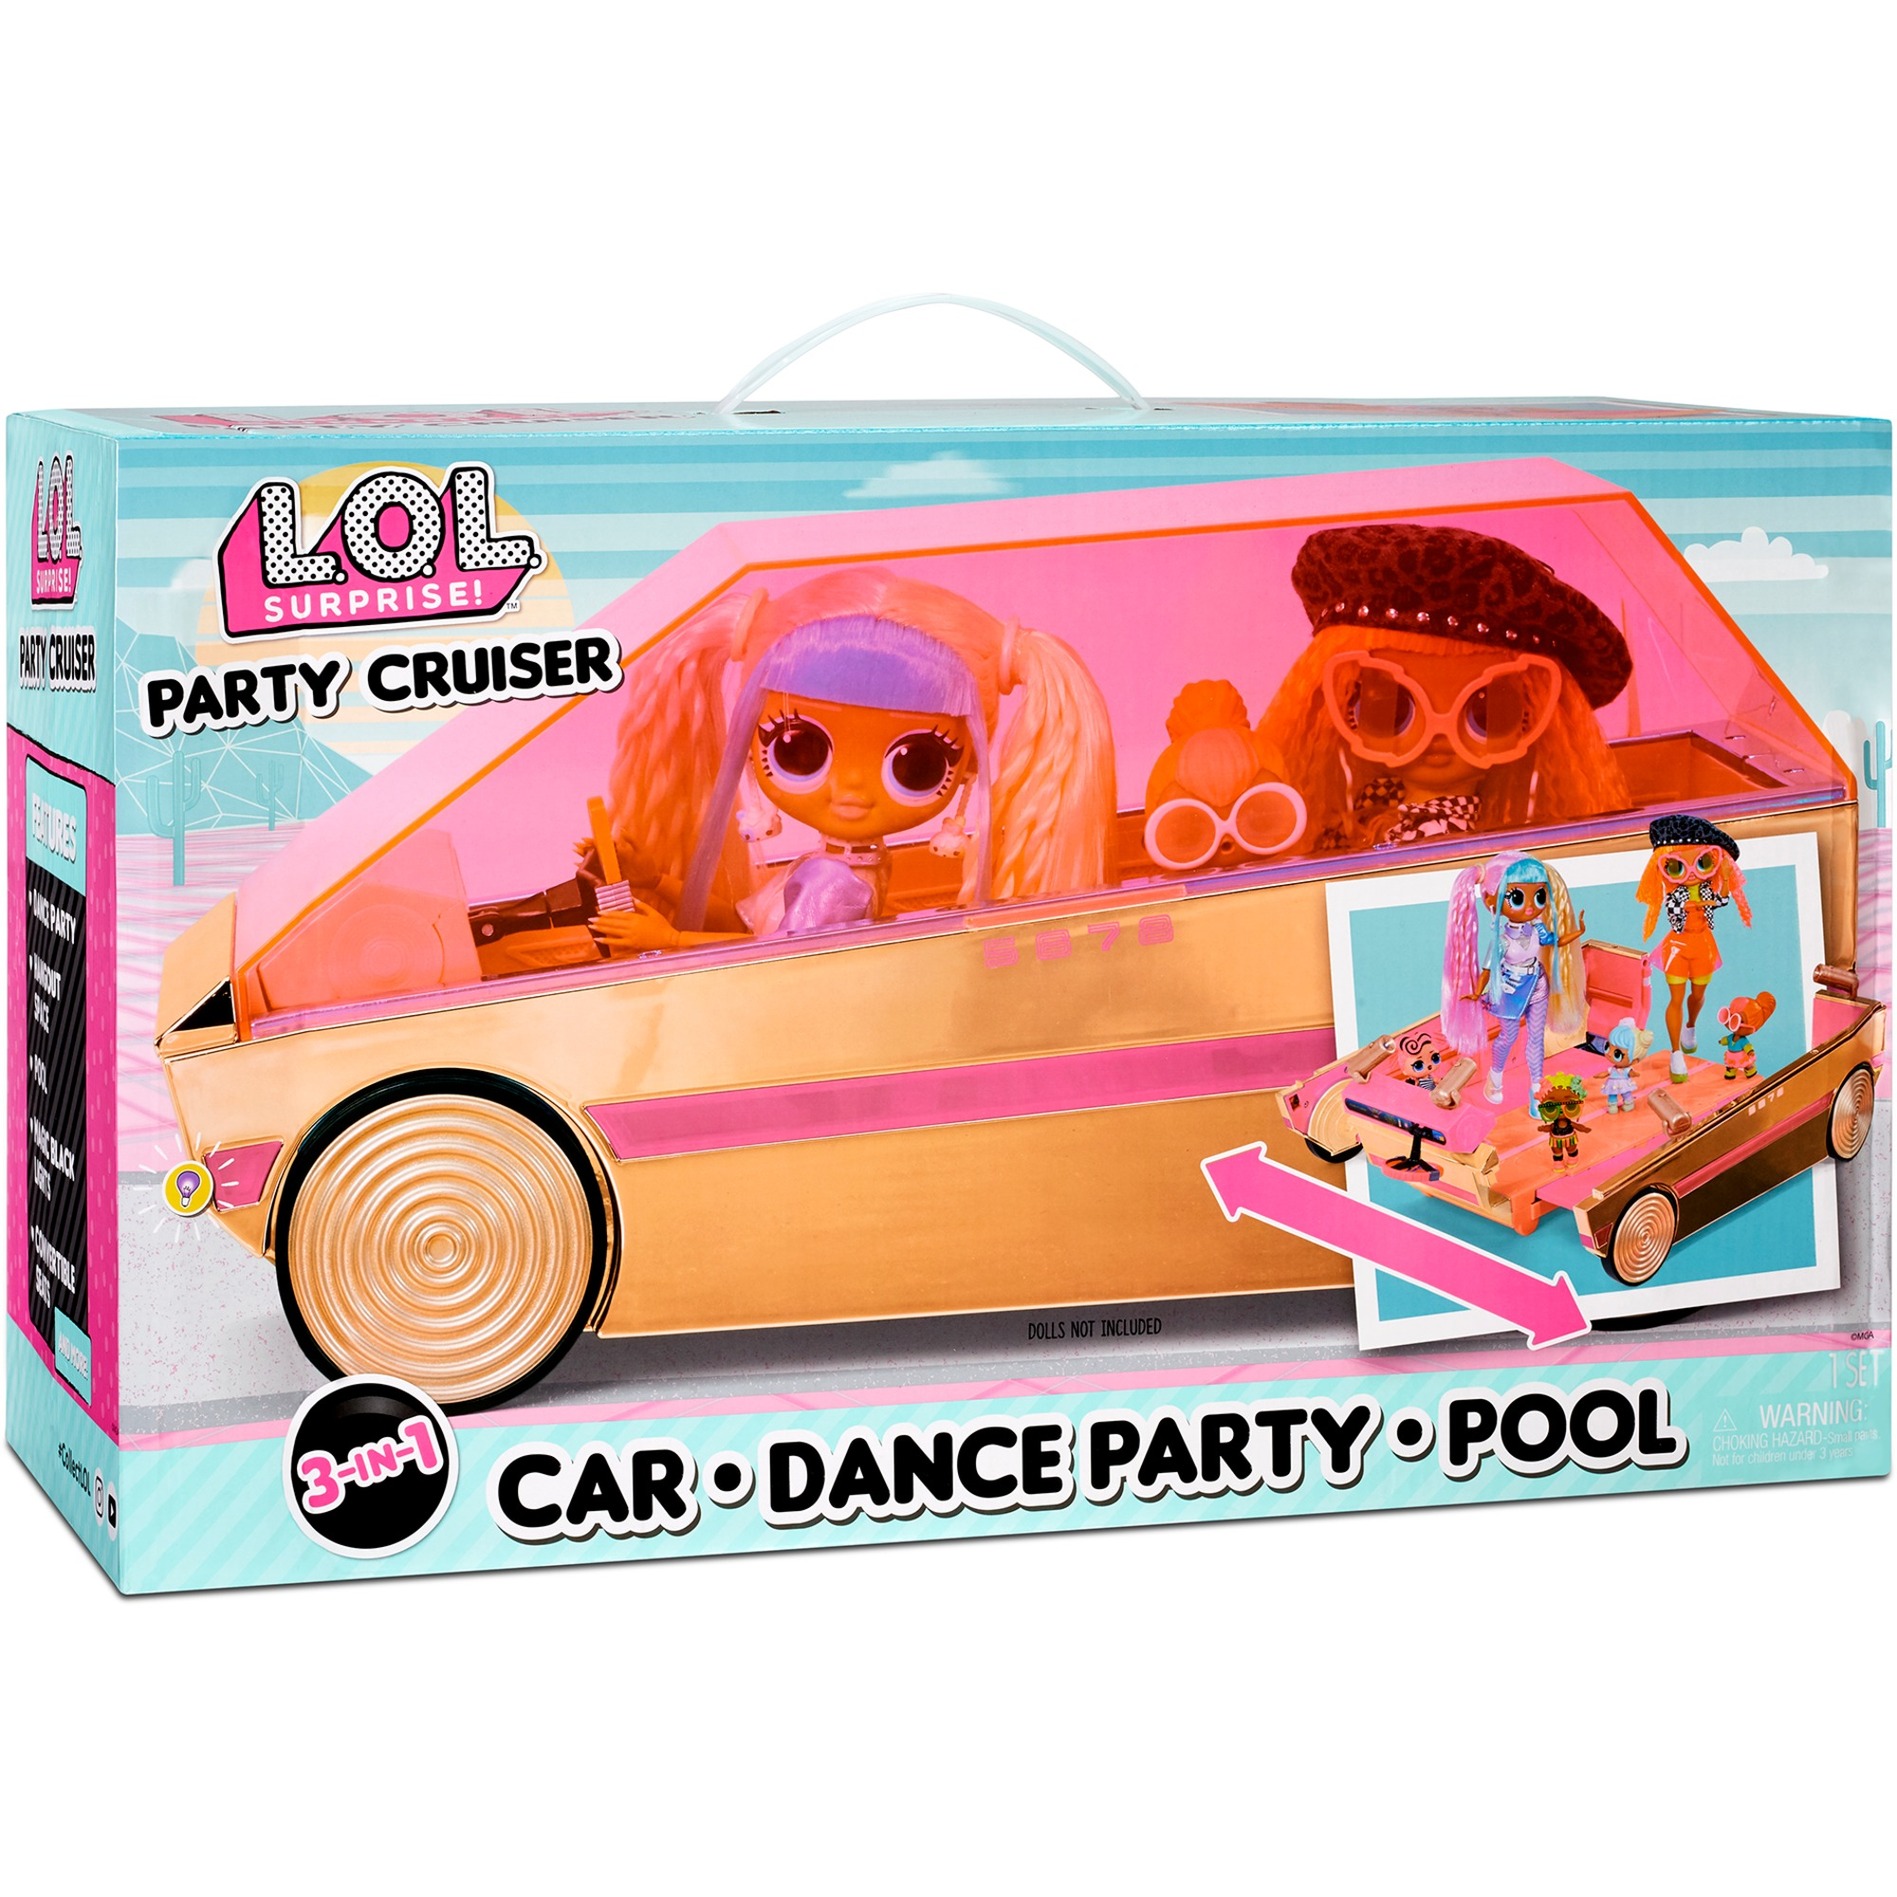 Image of Alternate - L.O.L. Surprise 3-in-1 Party Cruiser, Spielfahrzeug online einkaufen bei Alternate